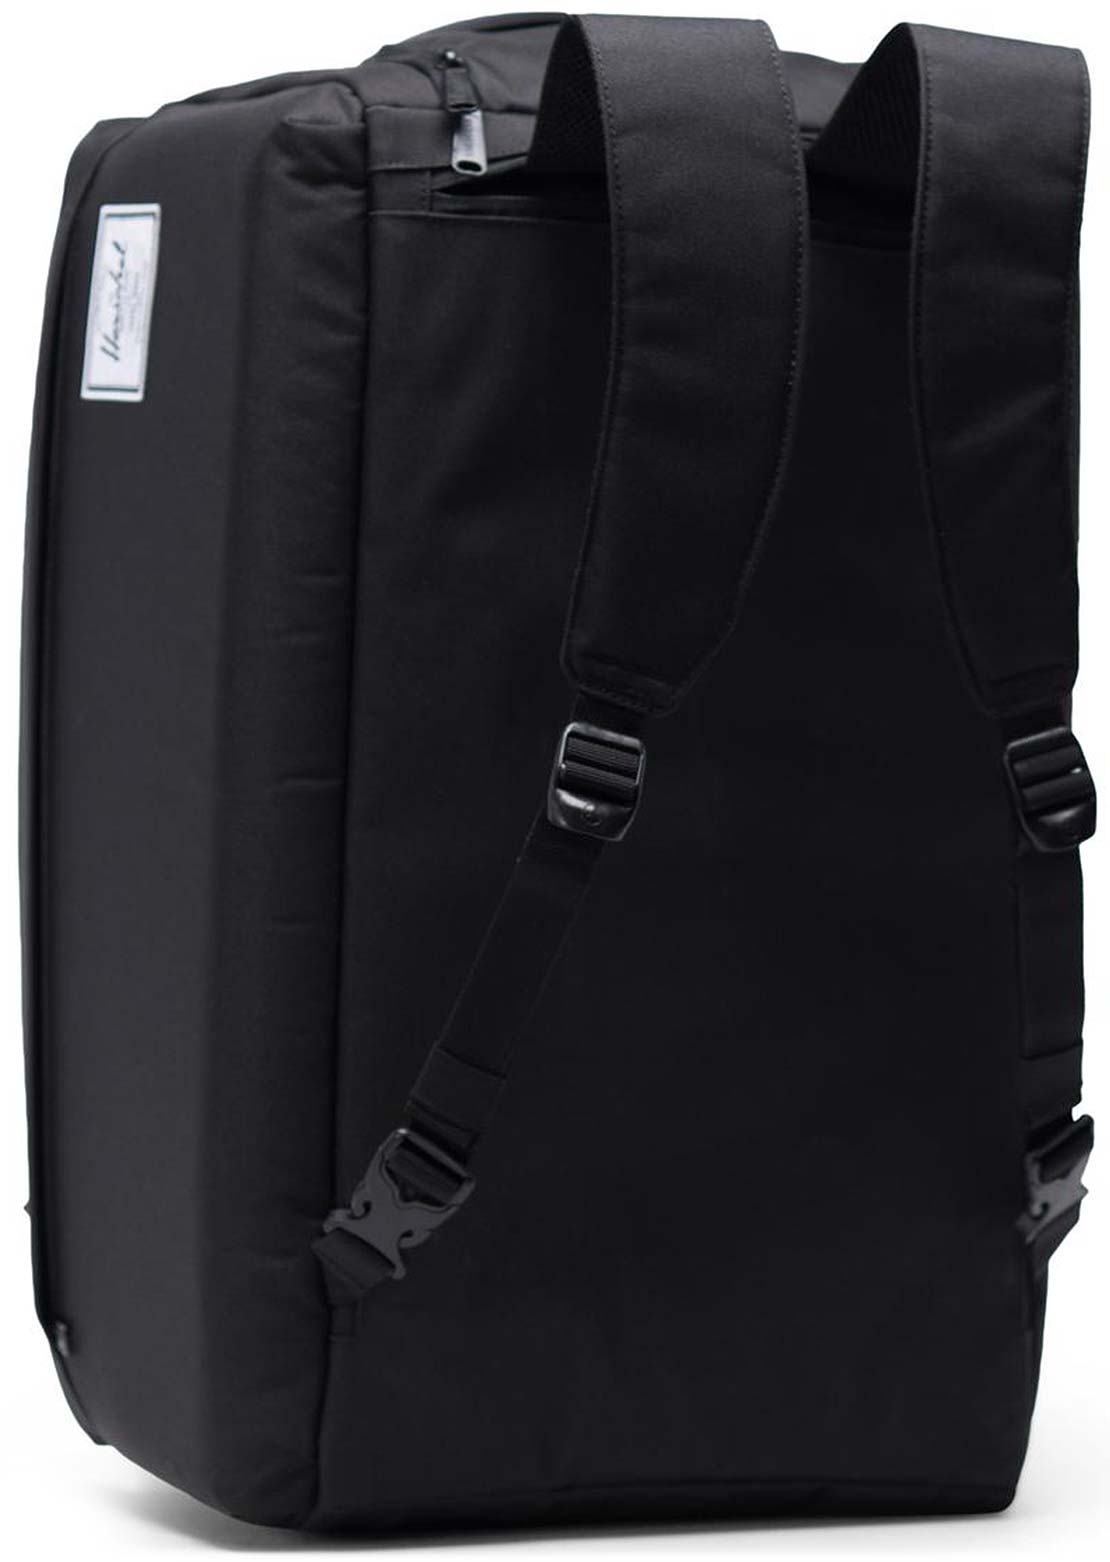 Herschel Outfitter Duffel Bag Black